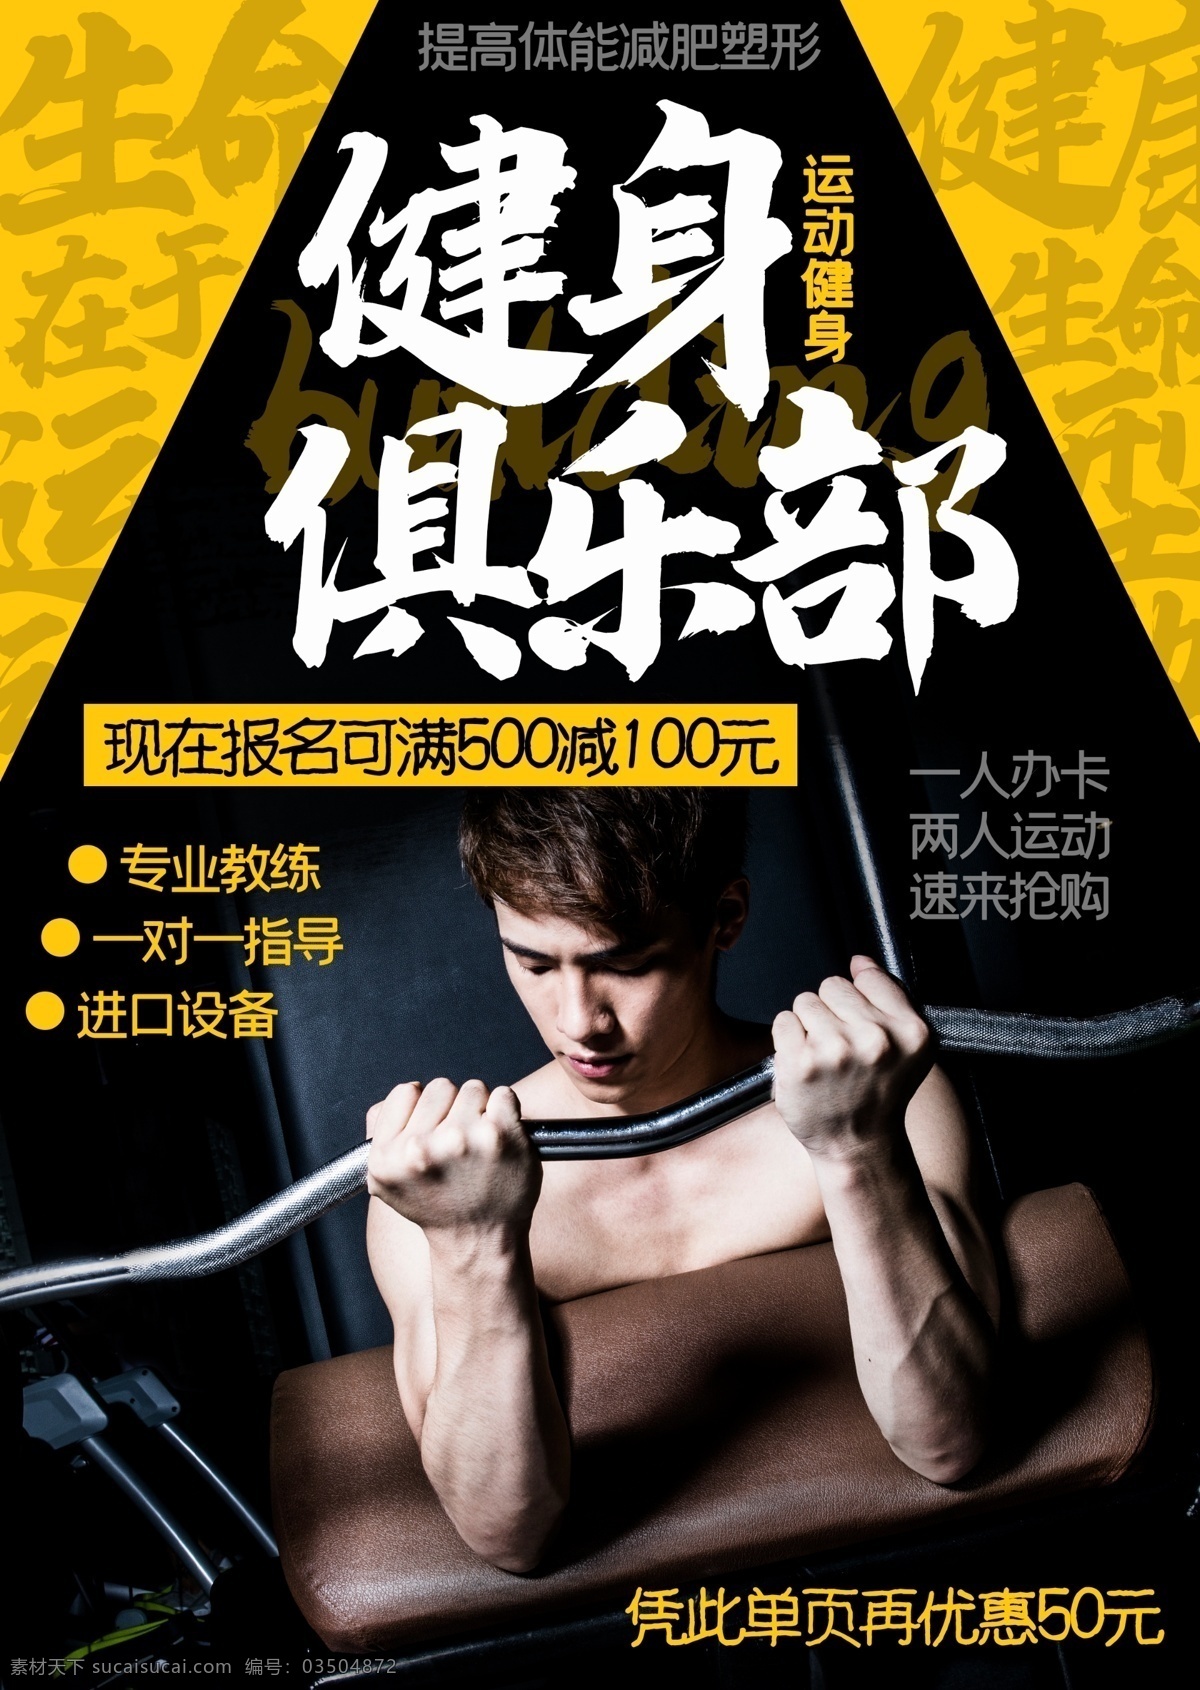 简约 中国 风 健身 俱乐部 促销 宣传单 页 中国风 健身俱乐部 促销宣传单 中国风宣传单 健身宣传单 健身房 健身房宣传单